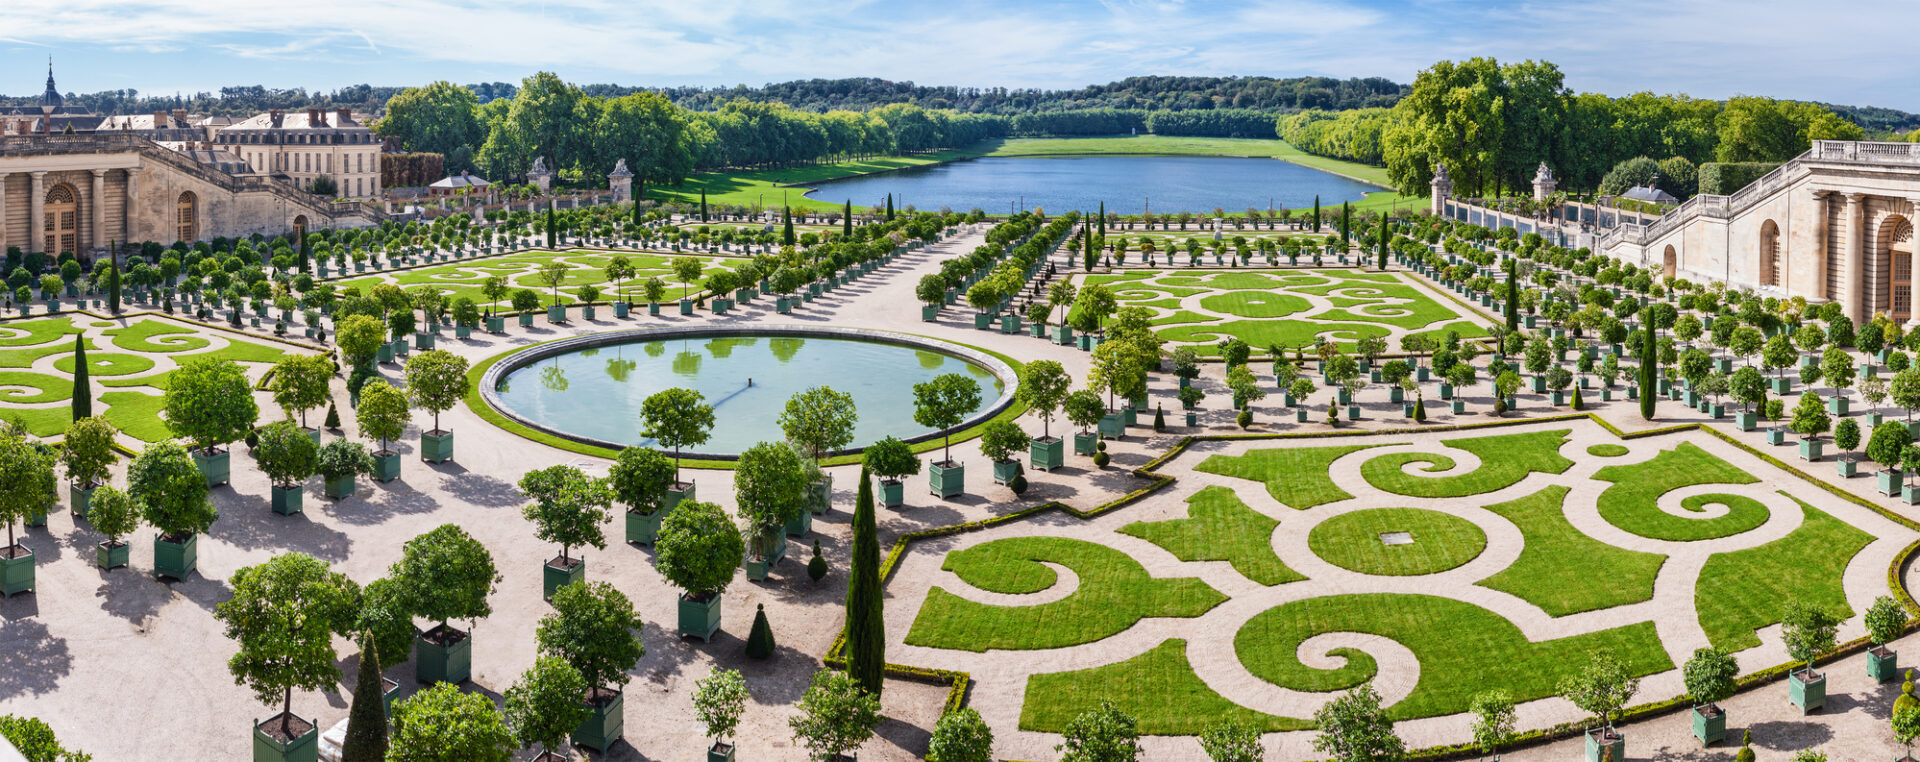 El Jardín de los Invernaderos de Versalles.  París, Francia